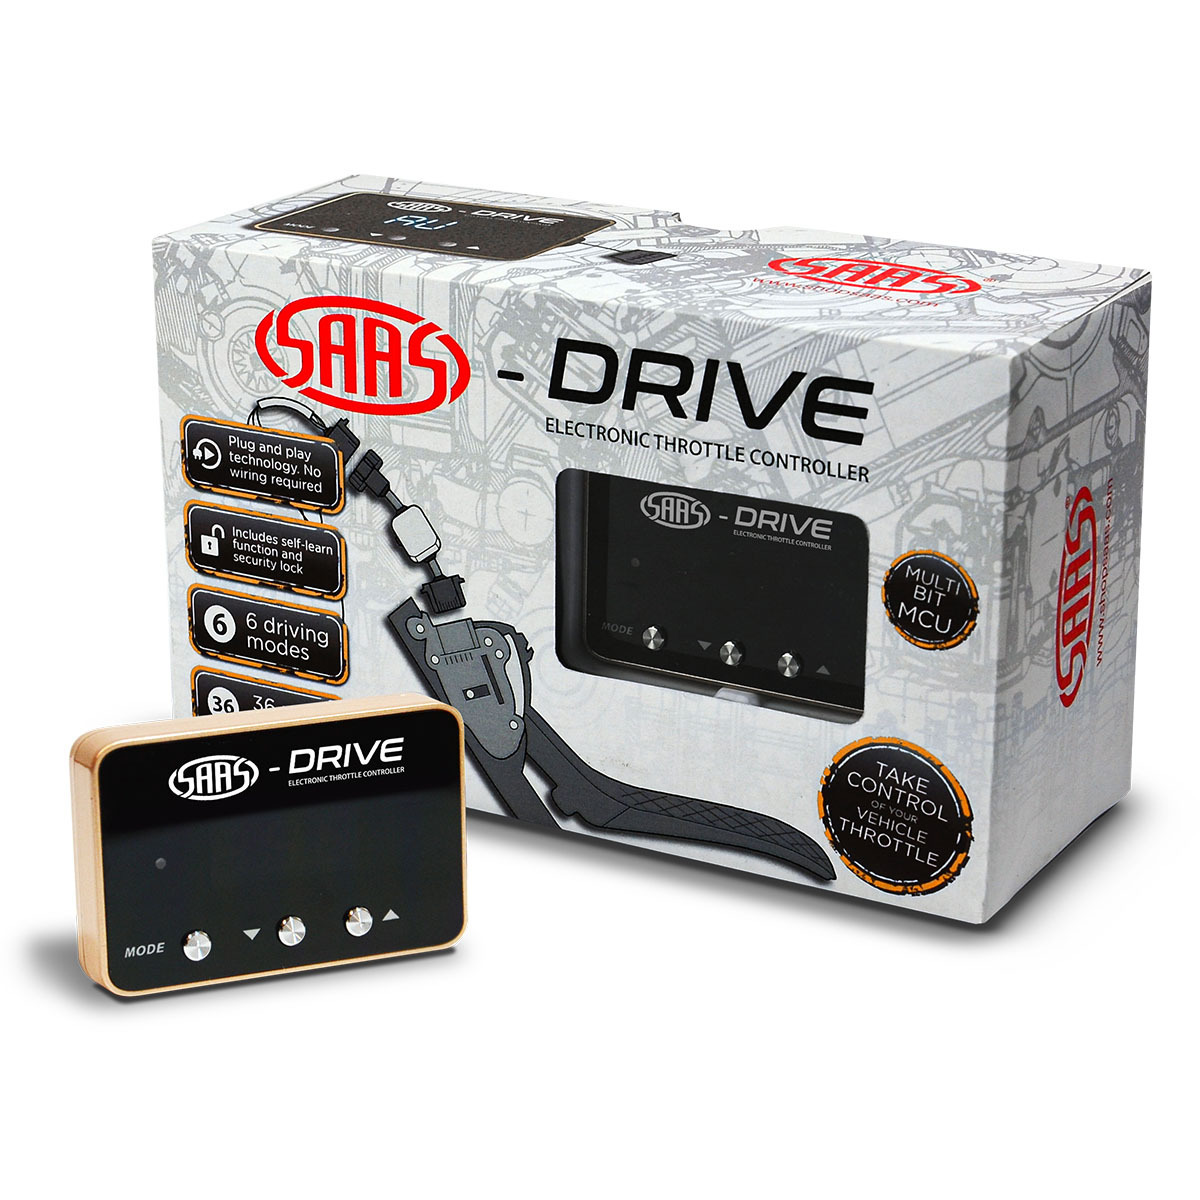 SAAS-Drive Chev Silverado Gen 2 2007 - 2014 Throttle Controller